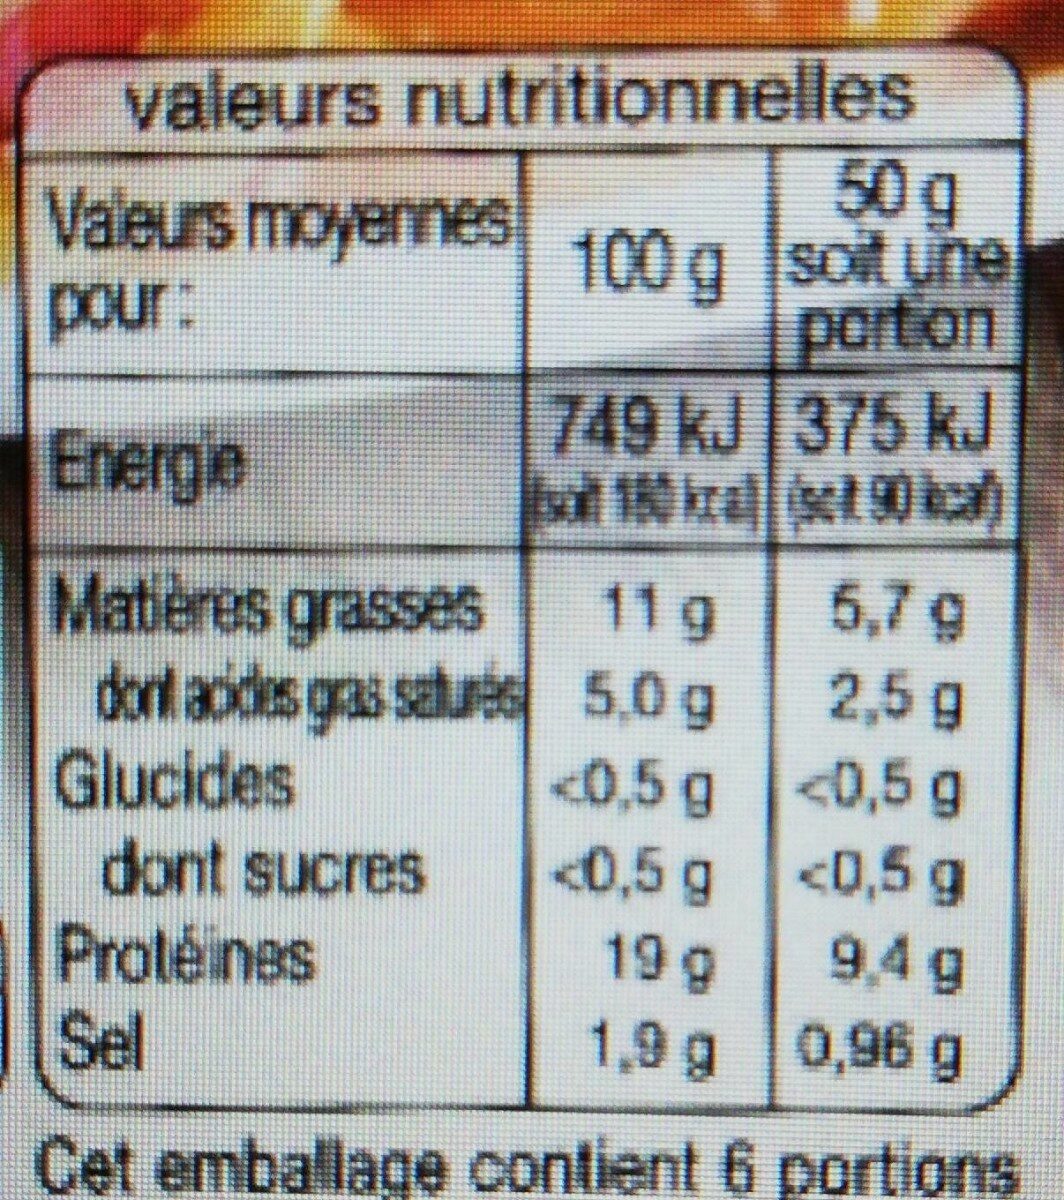 Allumettes nature (maxi format) - Tableau nutritionnel